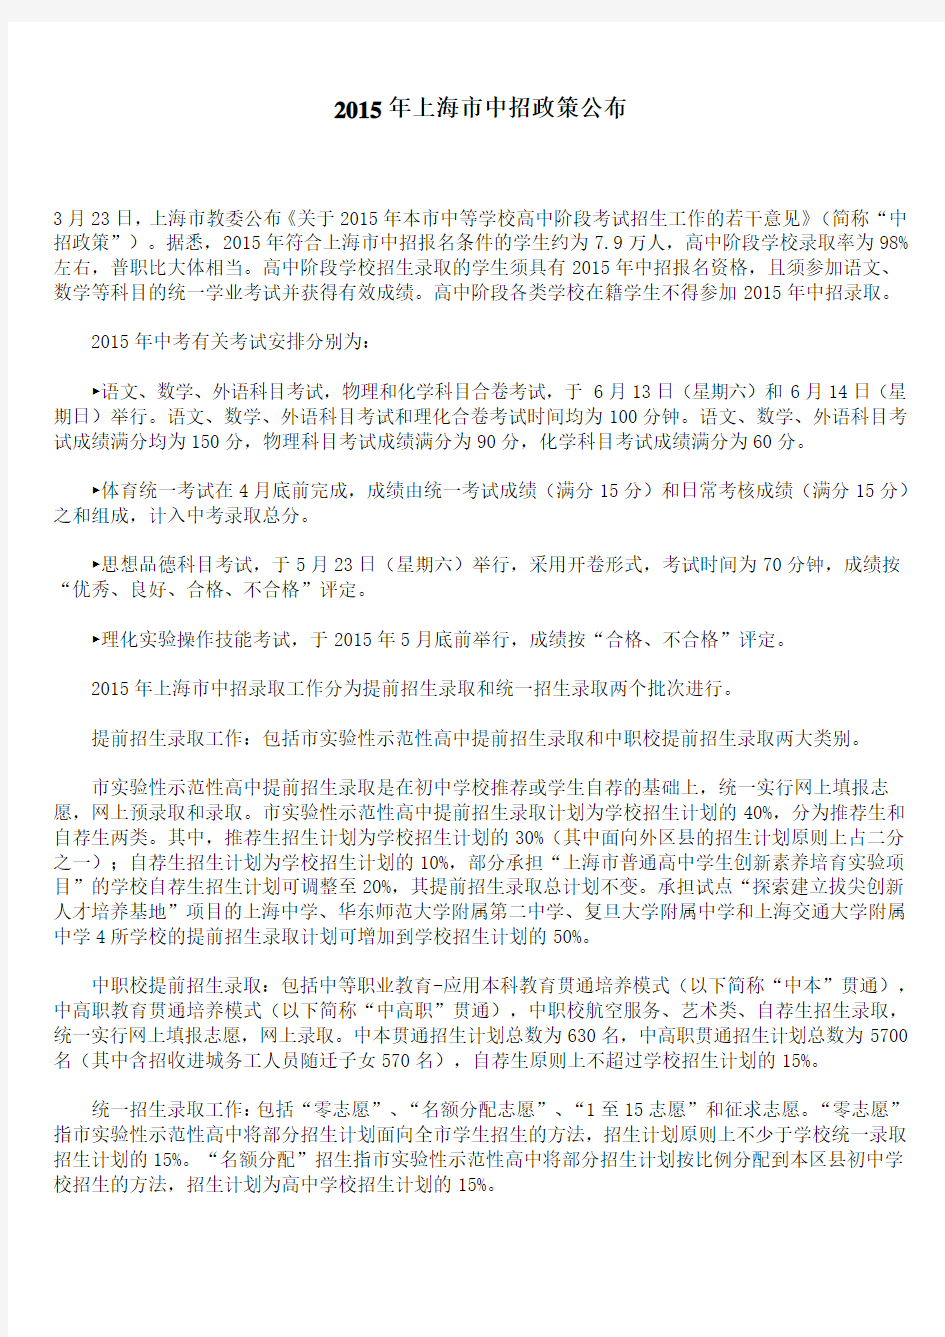 凯文老师,2015年上海中招政策公布,6月13日14日中考